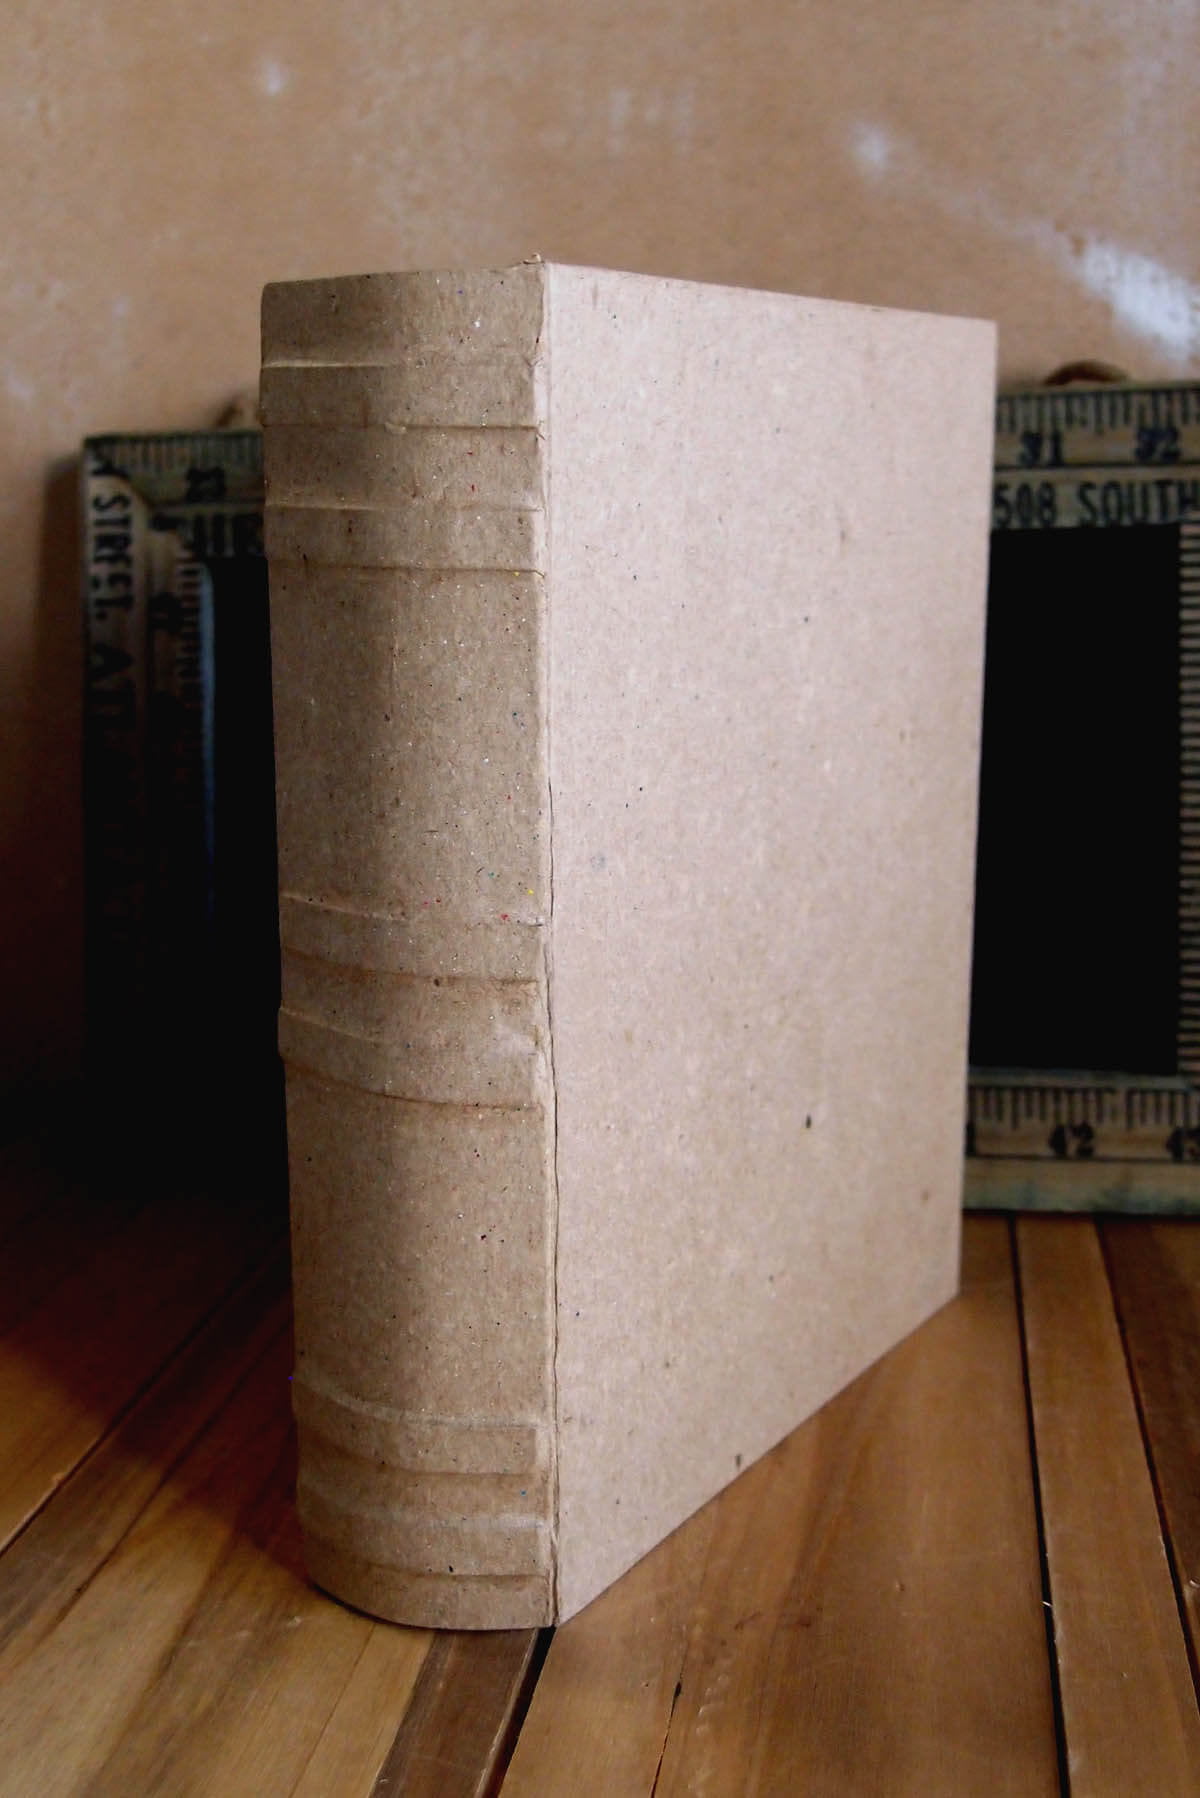 6 Pieces of Paper Mache Book Box 6 x 7.75 inches